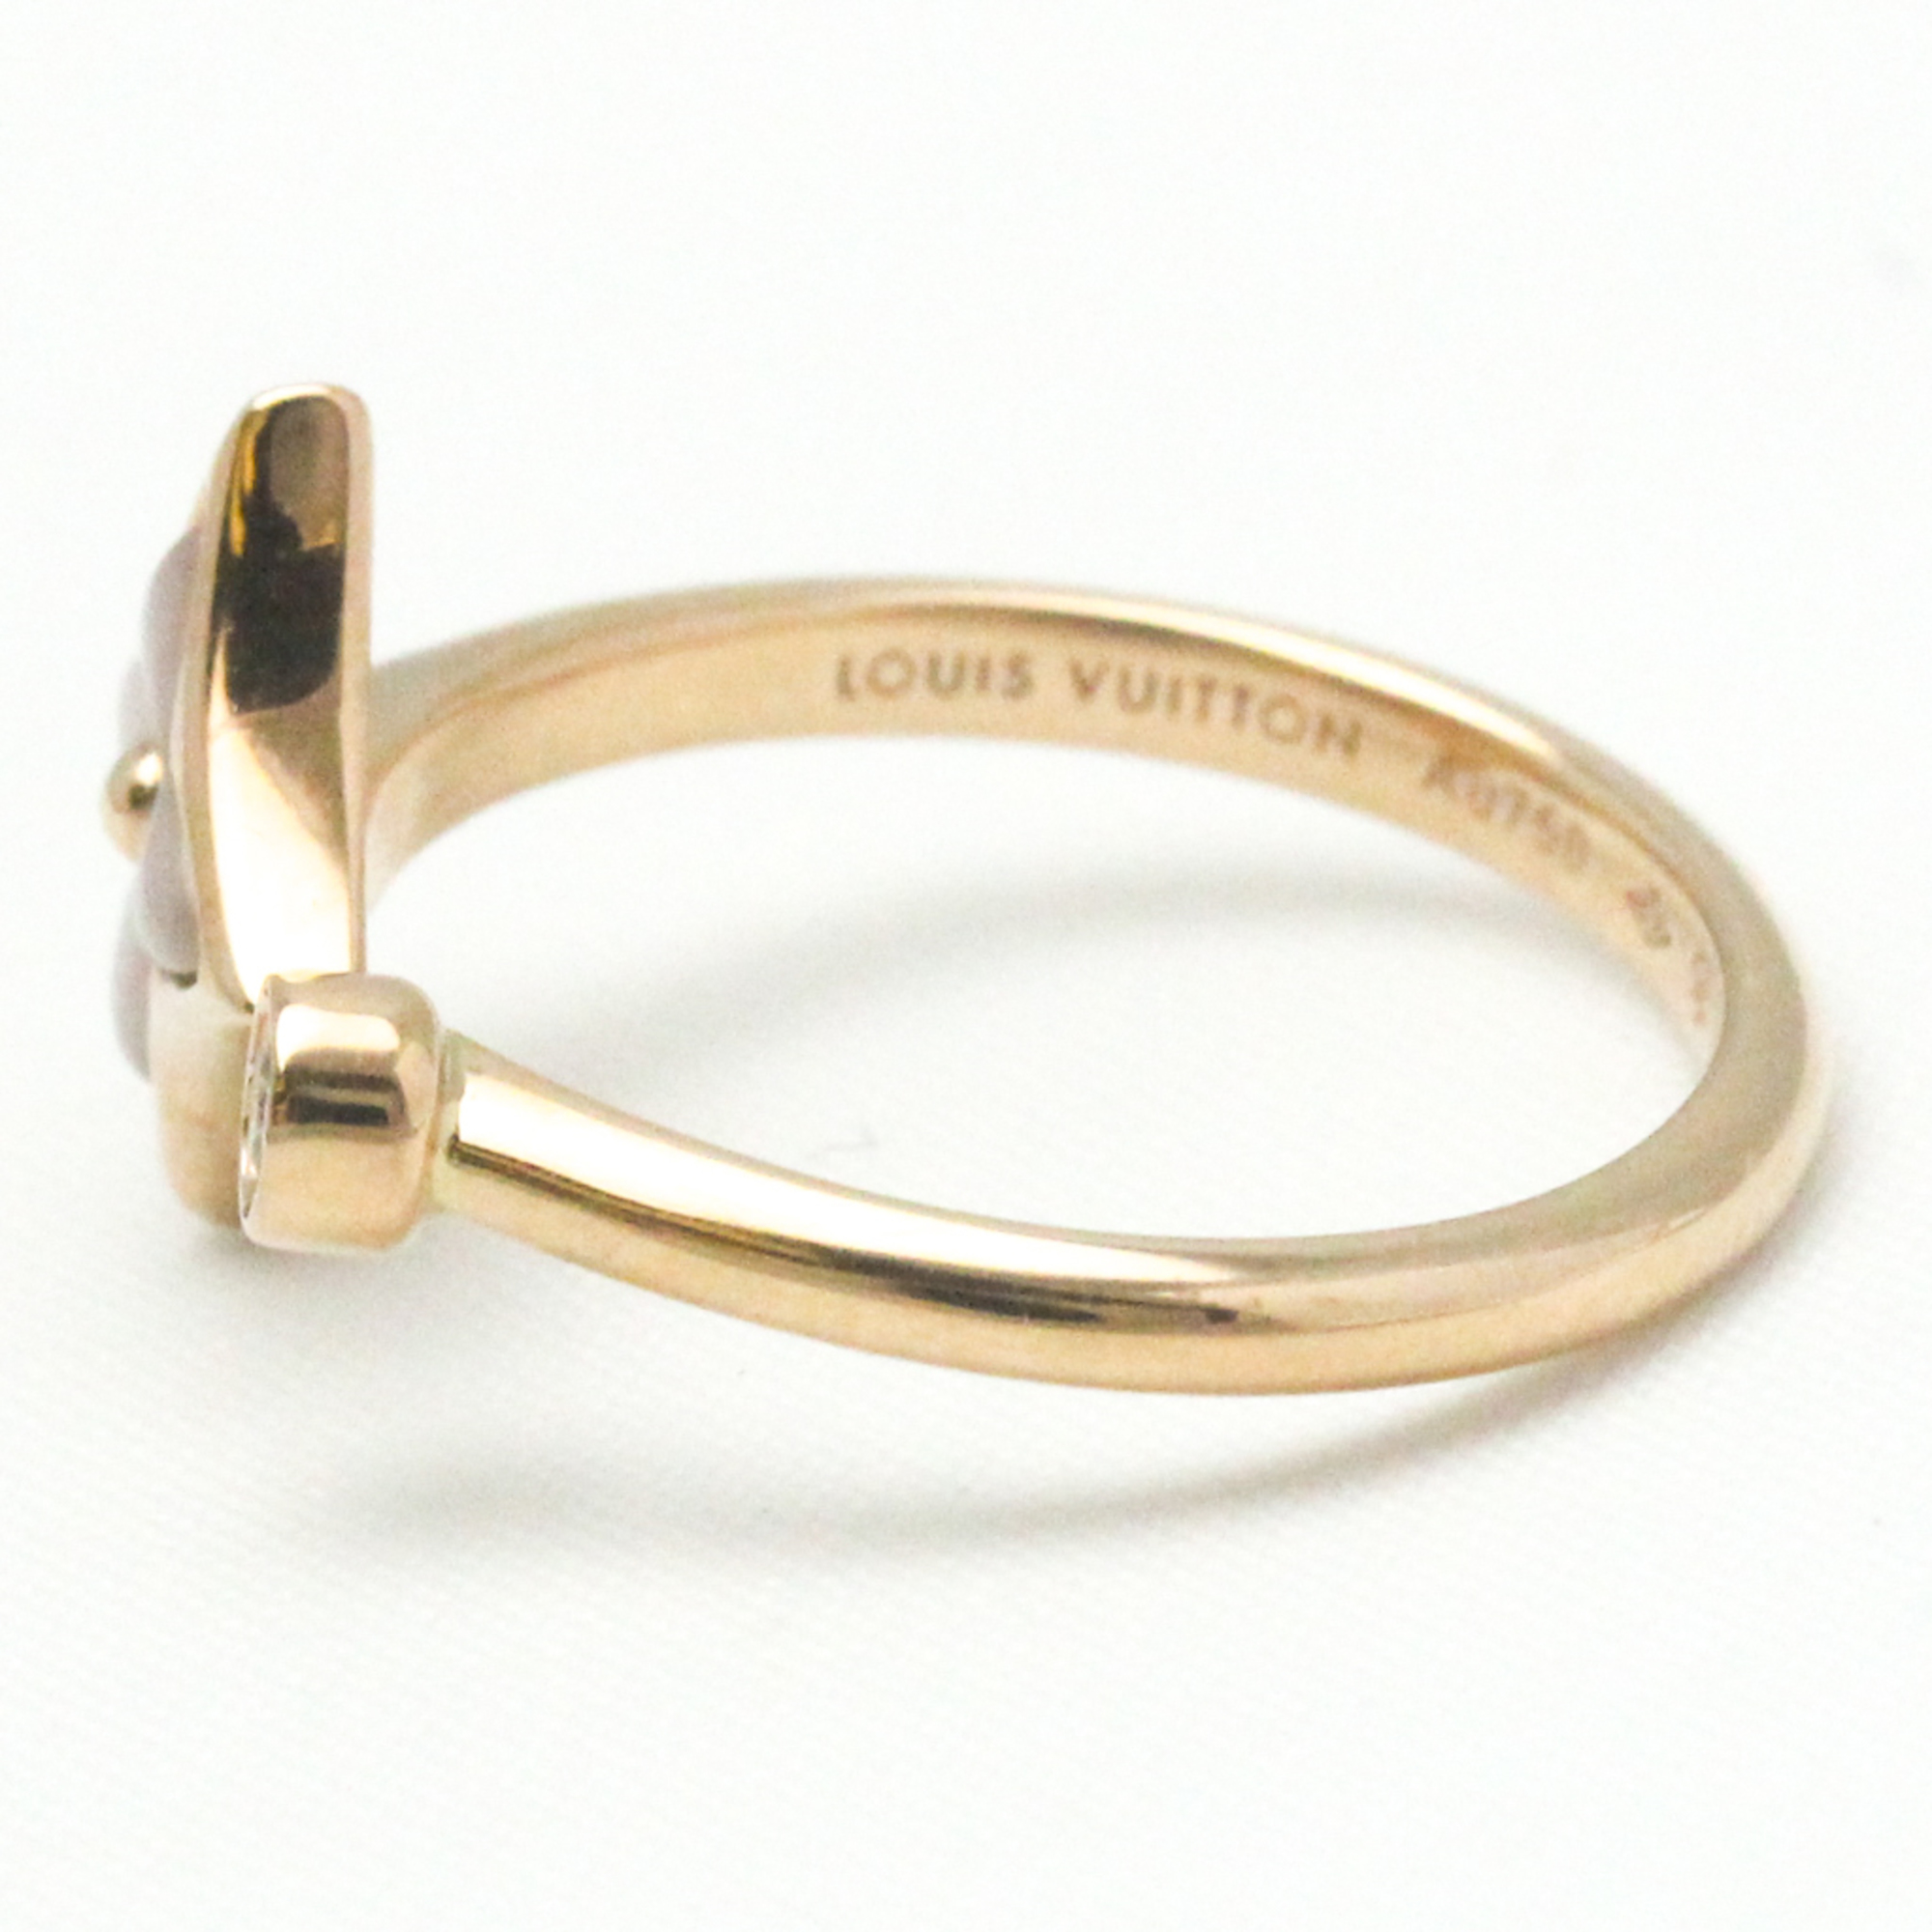 ルイ・ヴィトン(Louis Vuitton) リング スター ブロッサム ミニ (ピンクゴールド×ホワイト マザー・オブ・パール×ダイヤモンド) Q9S80A K18ピンクゴールド(K18PG) ファッション ダイヤモンド,シェル バンドリング カラット/0.04 ピンクゴールド(PG)